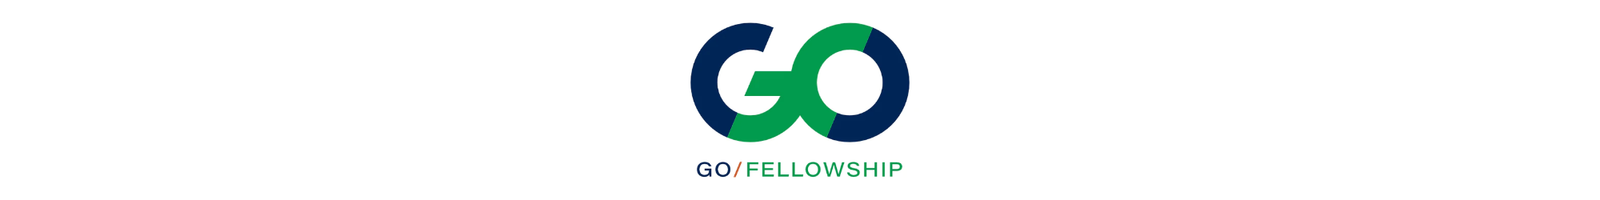 GO Fellowship Apparel